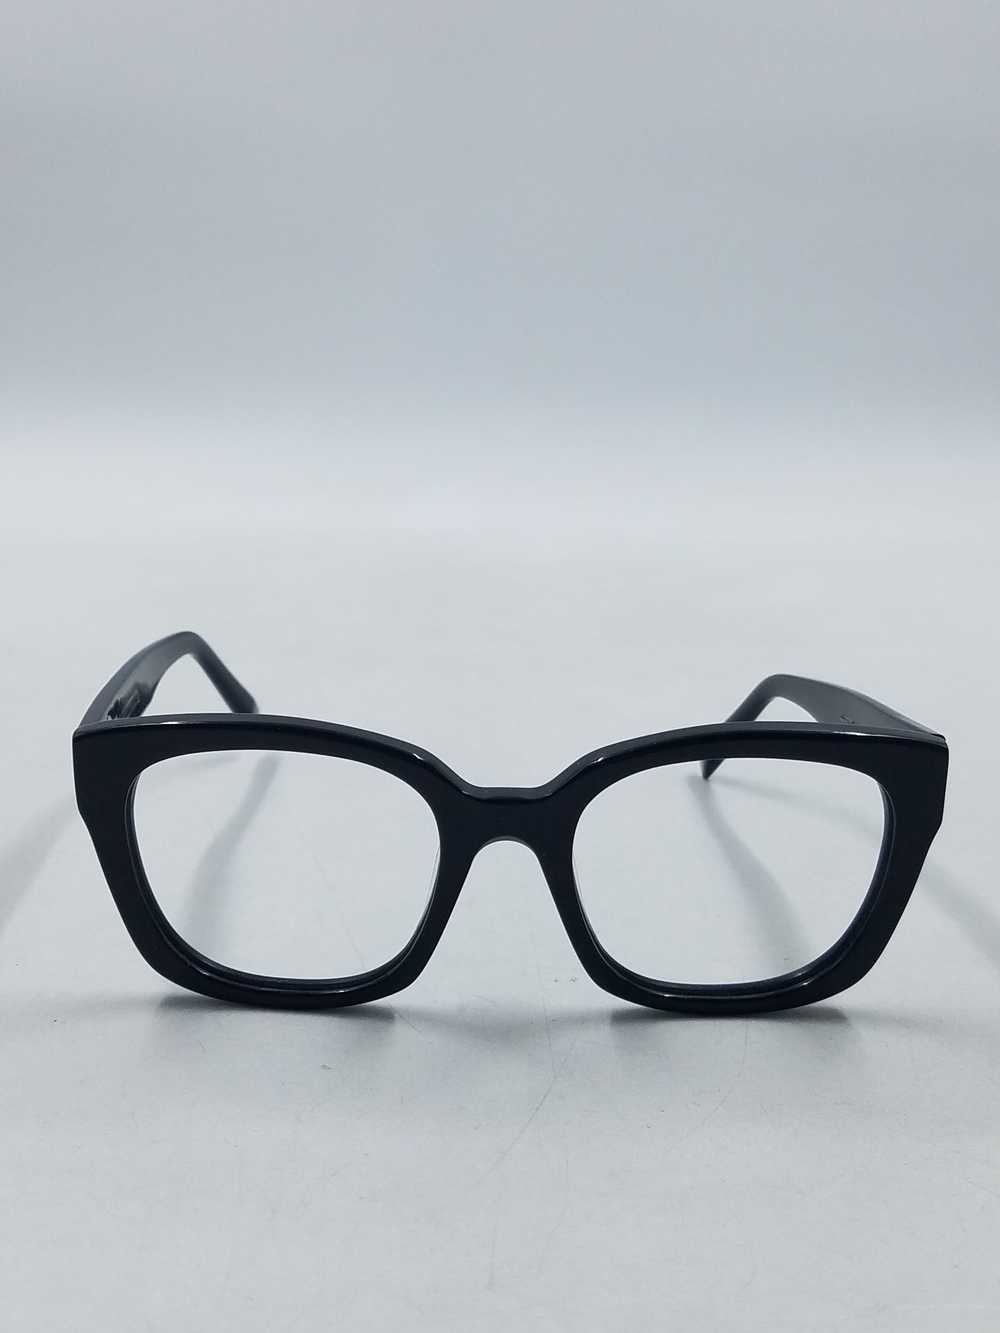 Warby Parker Aubrey Black Eyeglasses - image 2